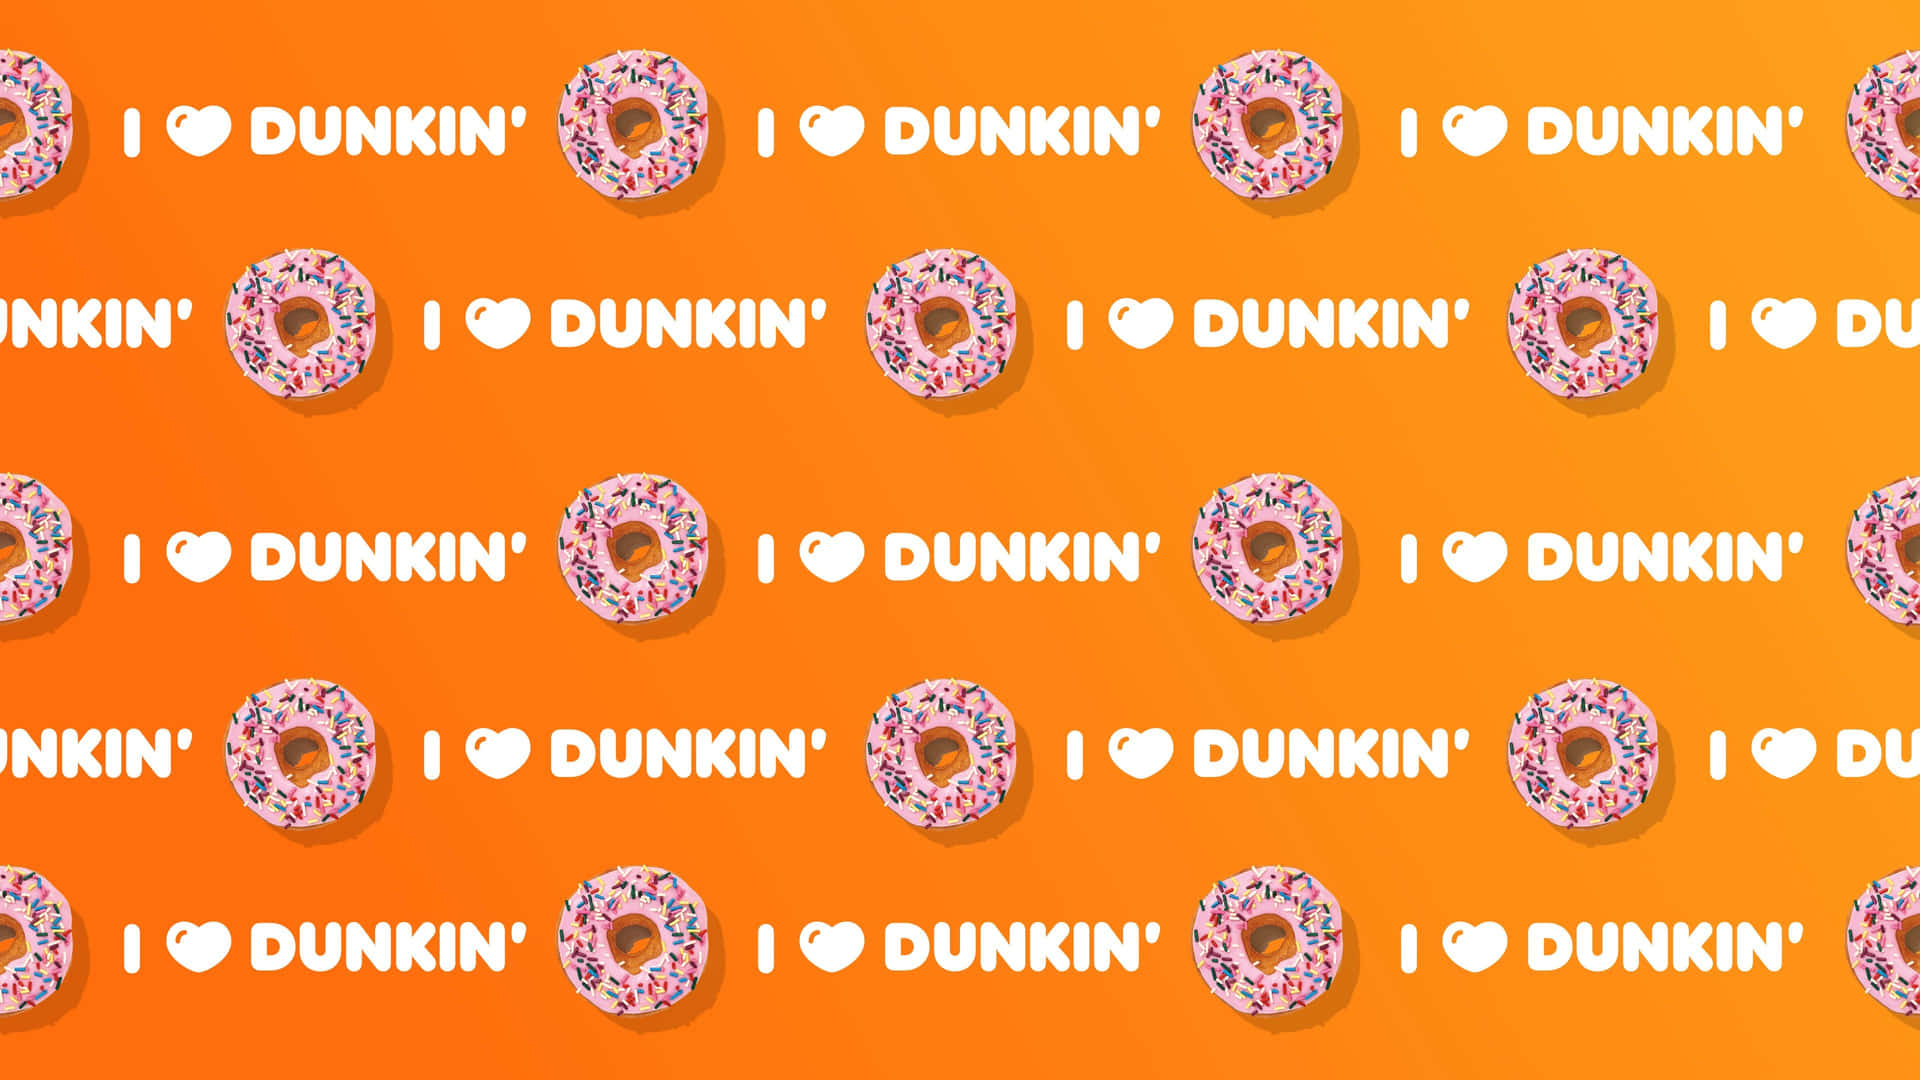 Perfecciónen Cada Taza En Dunkin Donuts.